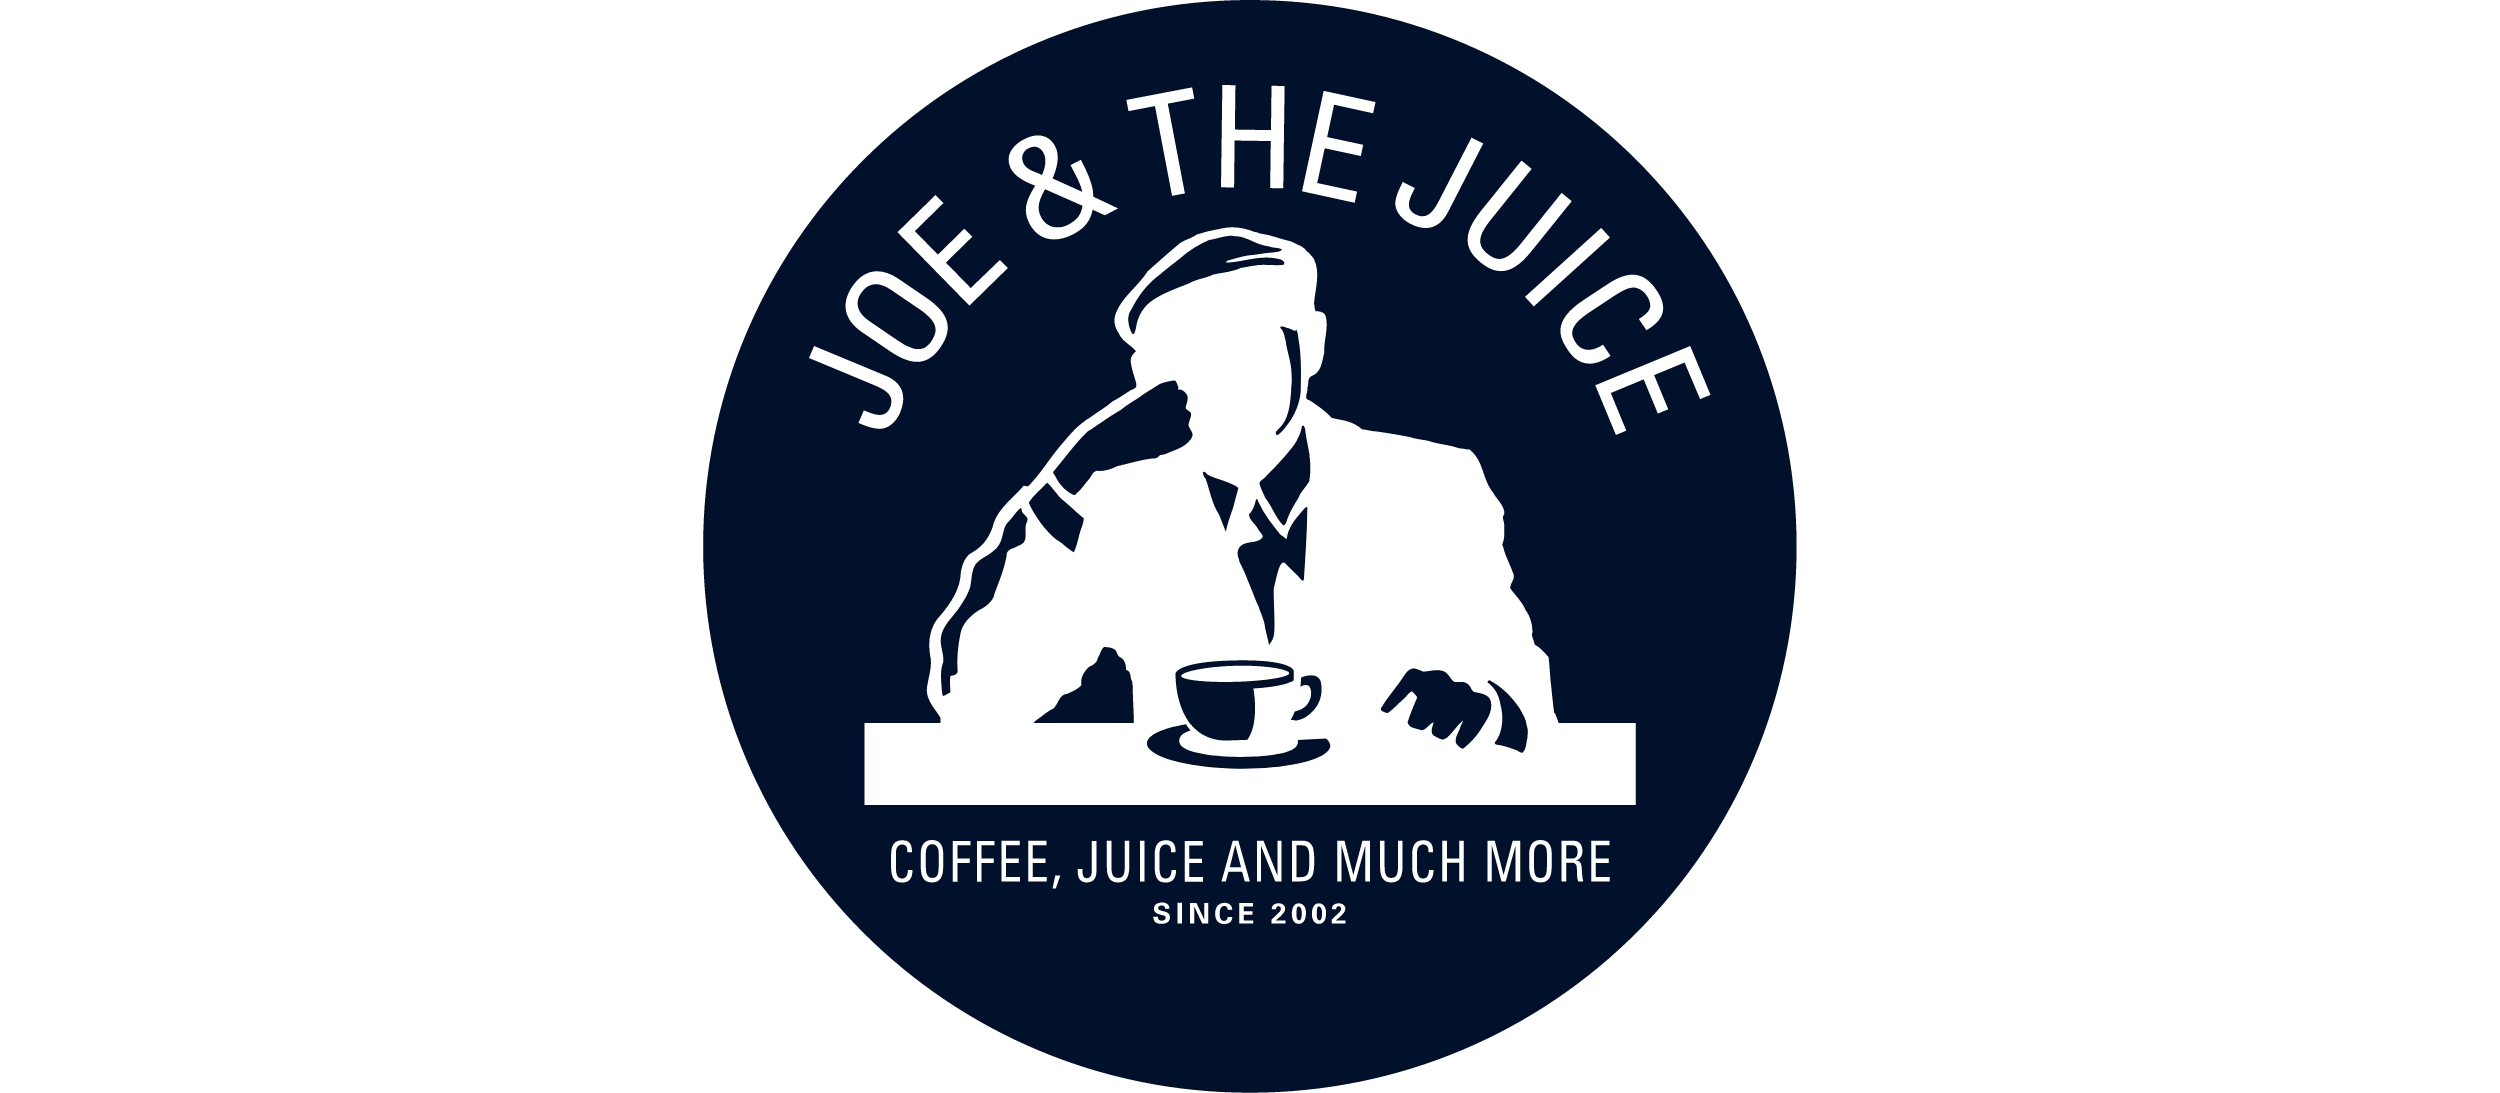 Joe & the juice